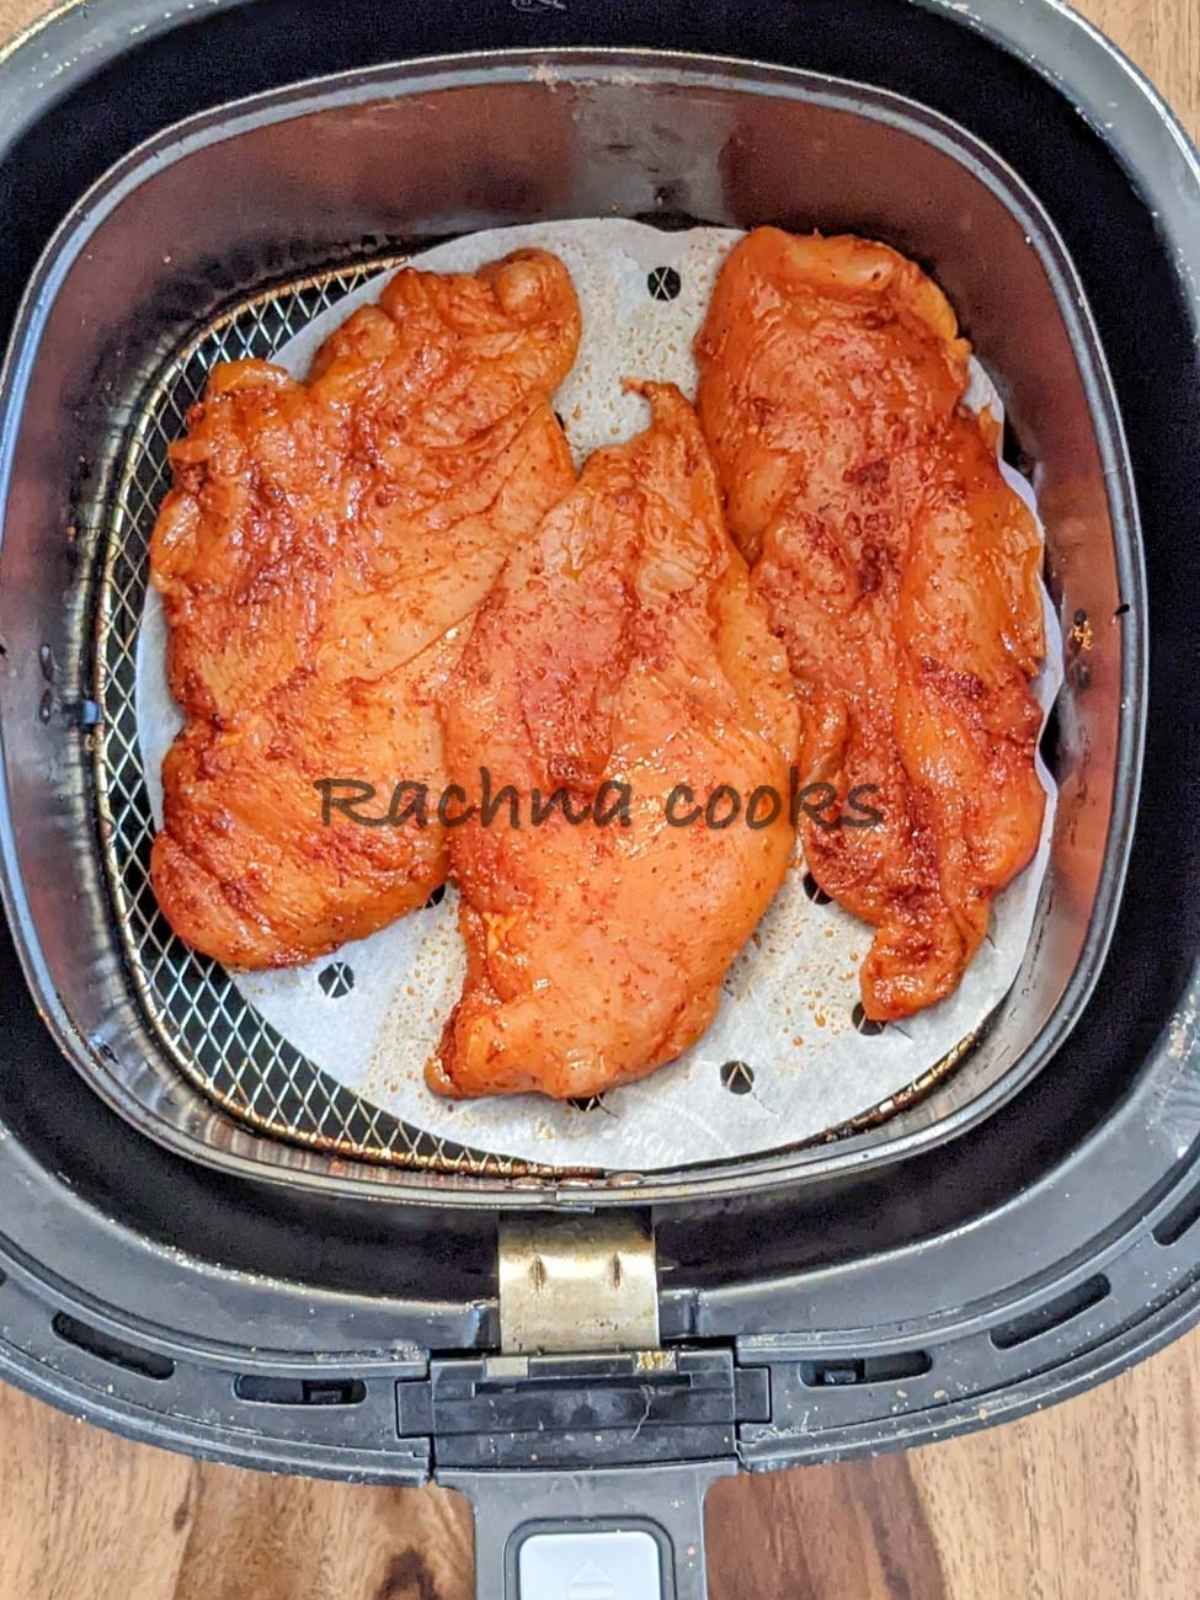 Chicken breasts with seasonings in air fryer basket.